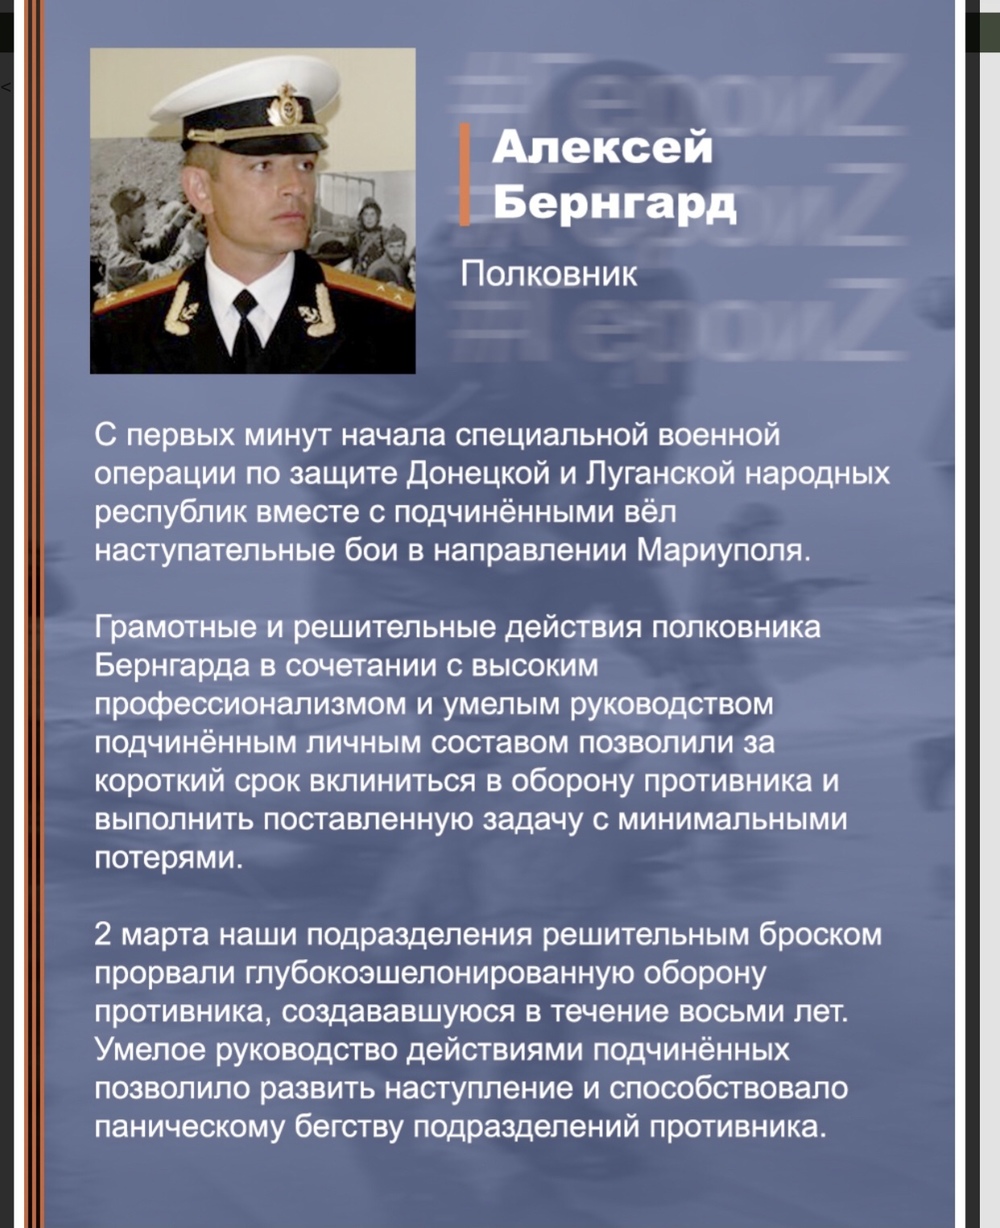 Опубликованы портреты российских военнослужащих, выполняющих боевые задачи спецоперации